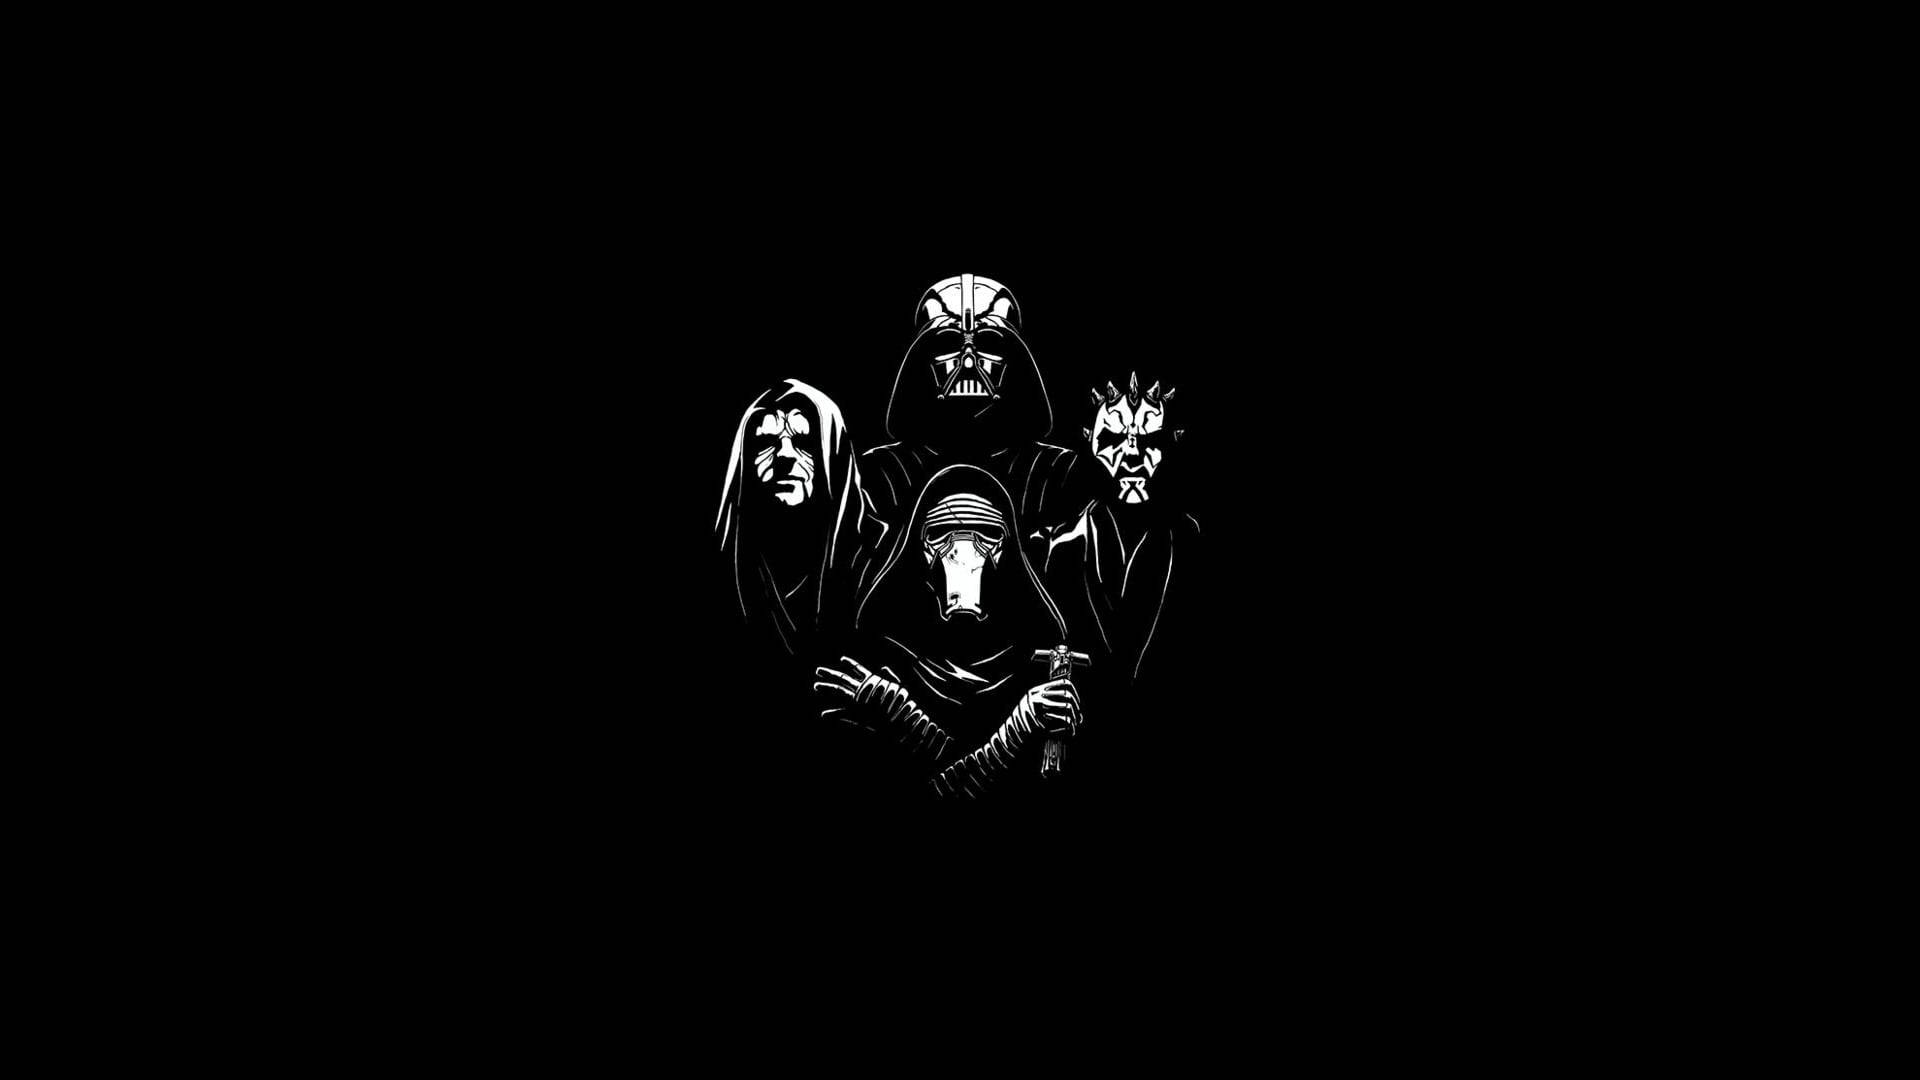 Darth Maul And Darth Vader In A Sci-fi Showdown Background